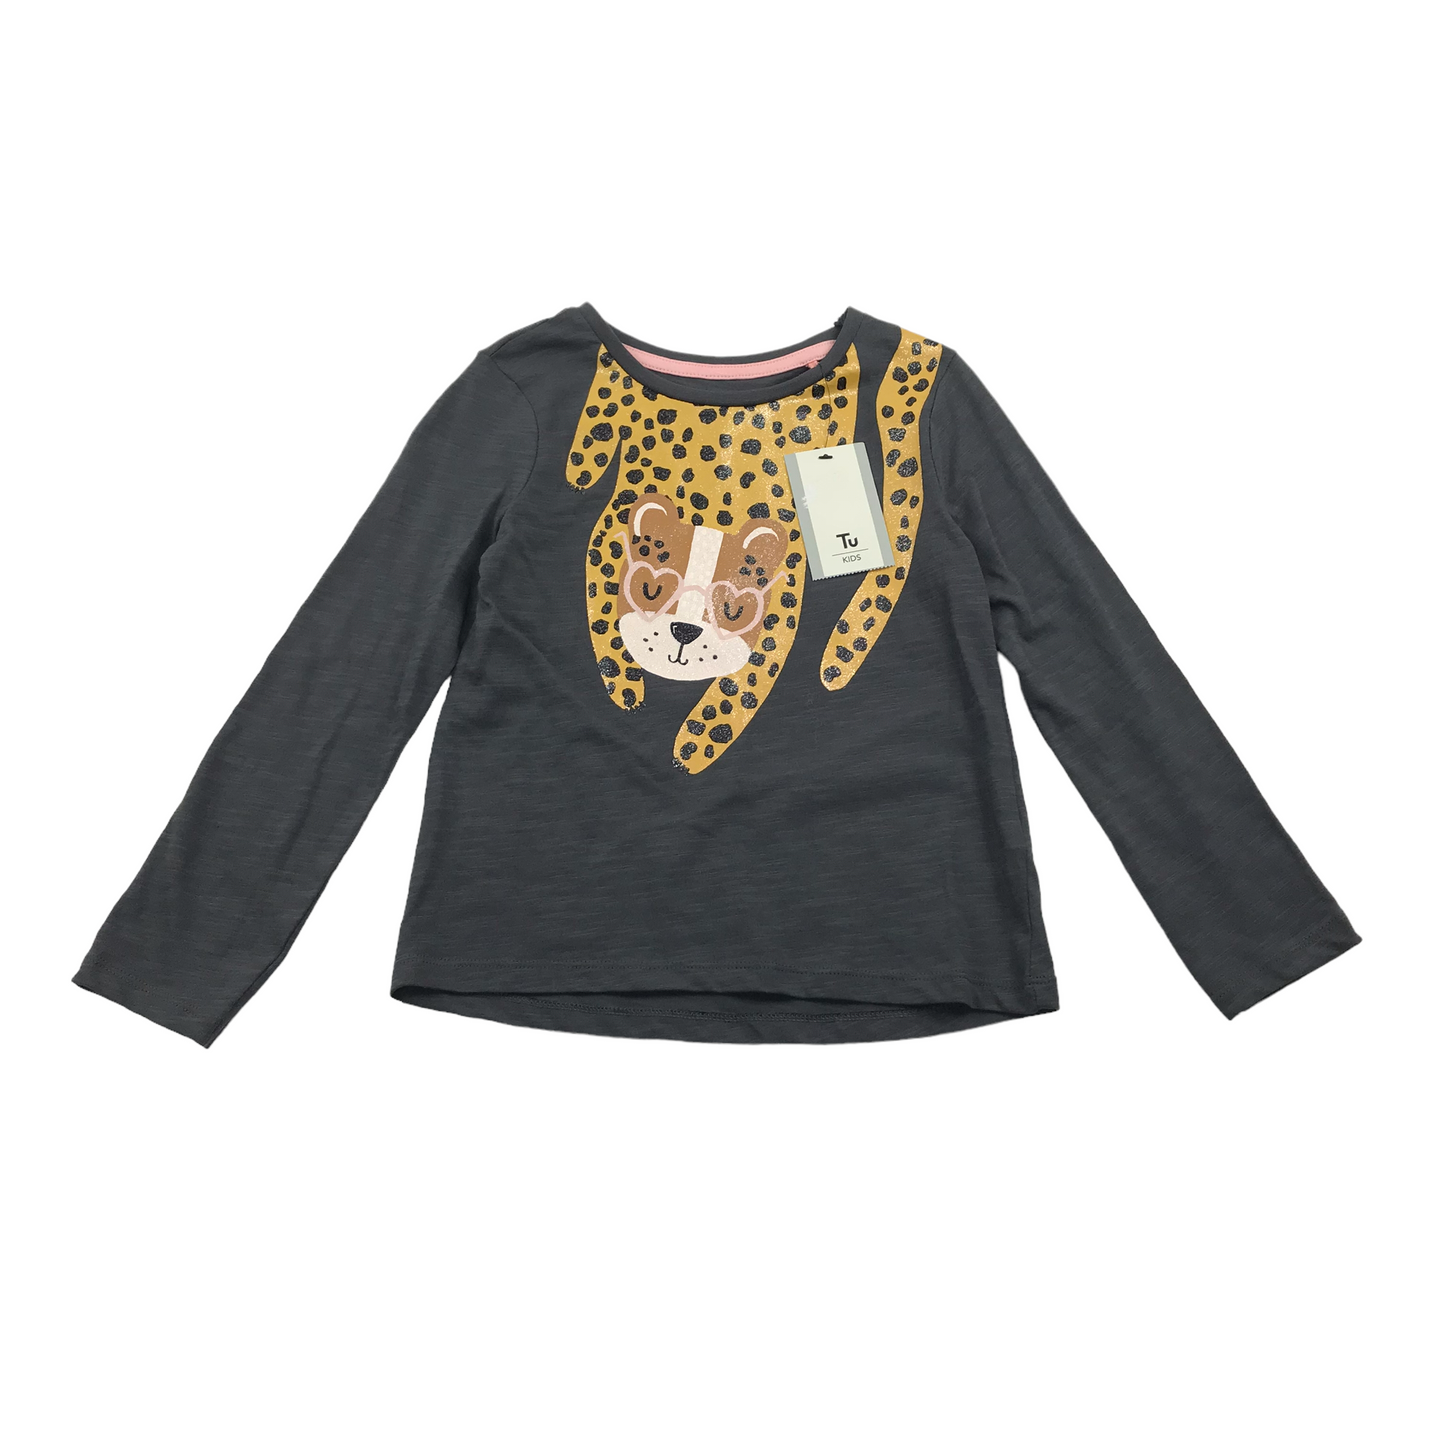 Tu Dark Grey Leopard Long Sleeve T-shirt Age 4